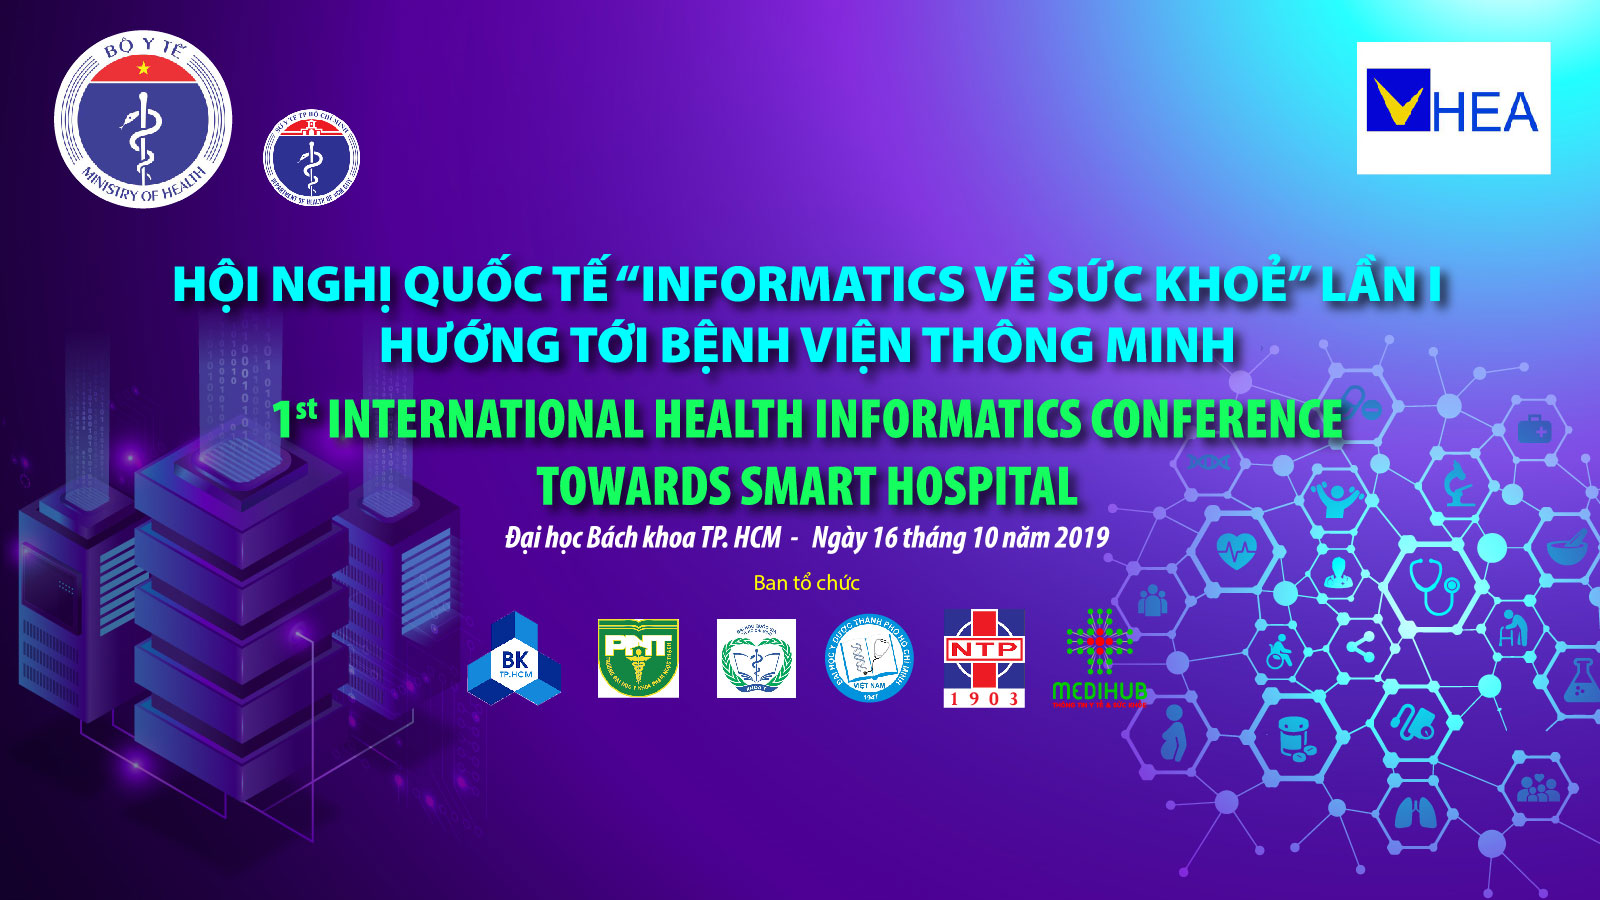 Mời tham gia Hội nghị quốc tế "Informatics về sức khỏe" lần 1: Hướng tới bệnh viện thông minh